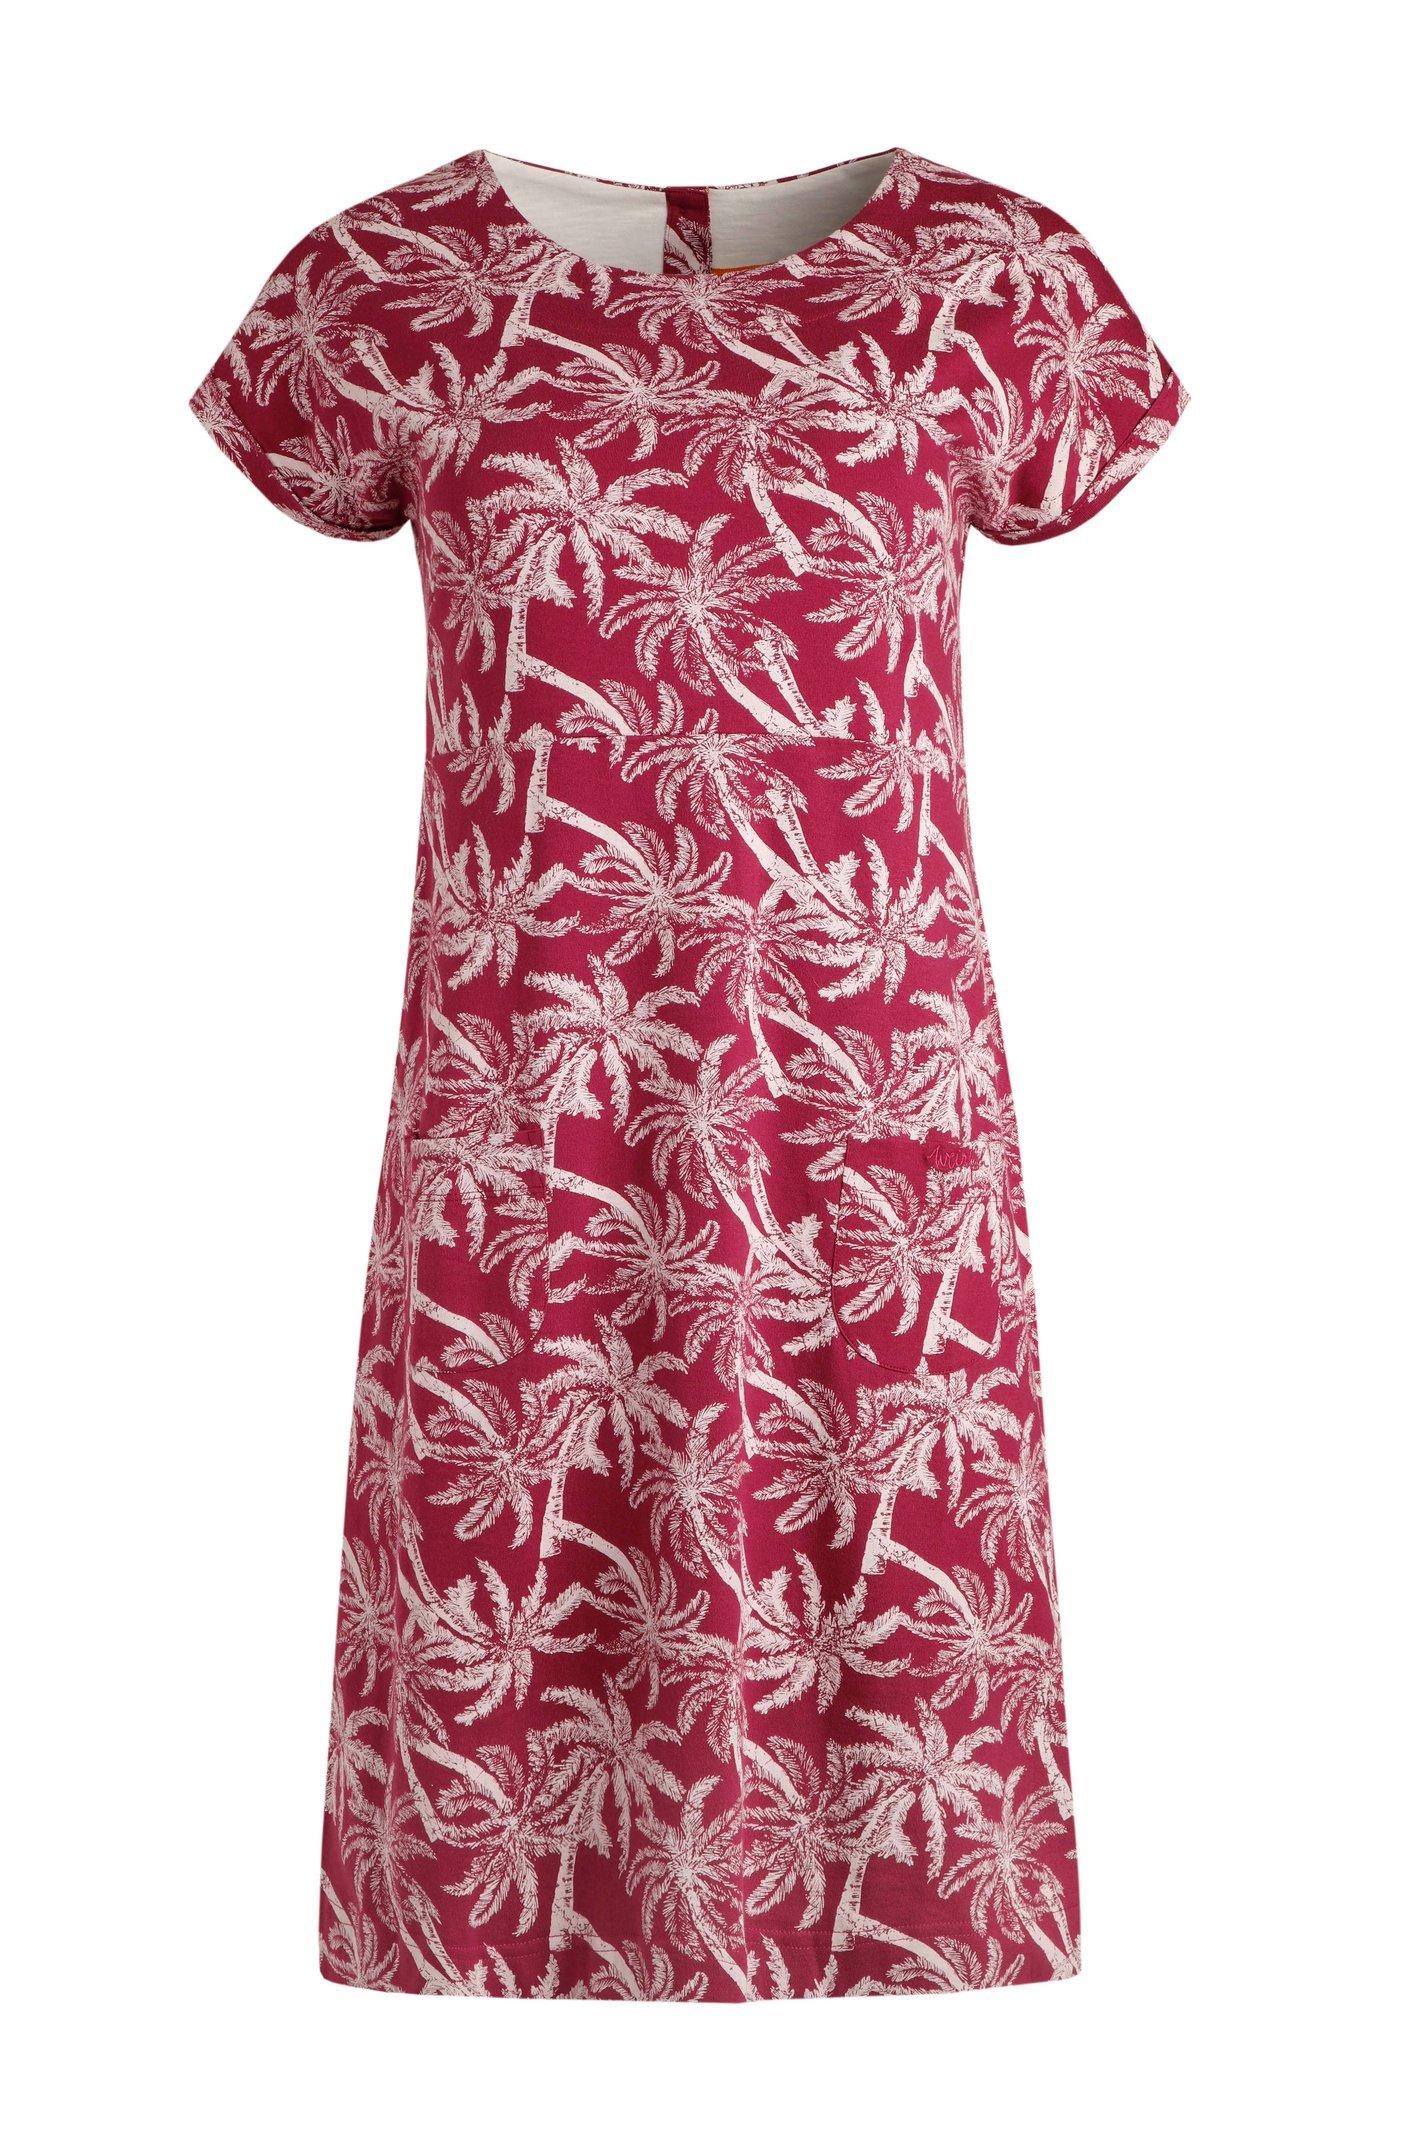 Tallahassee Organic Jersey Dress